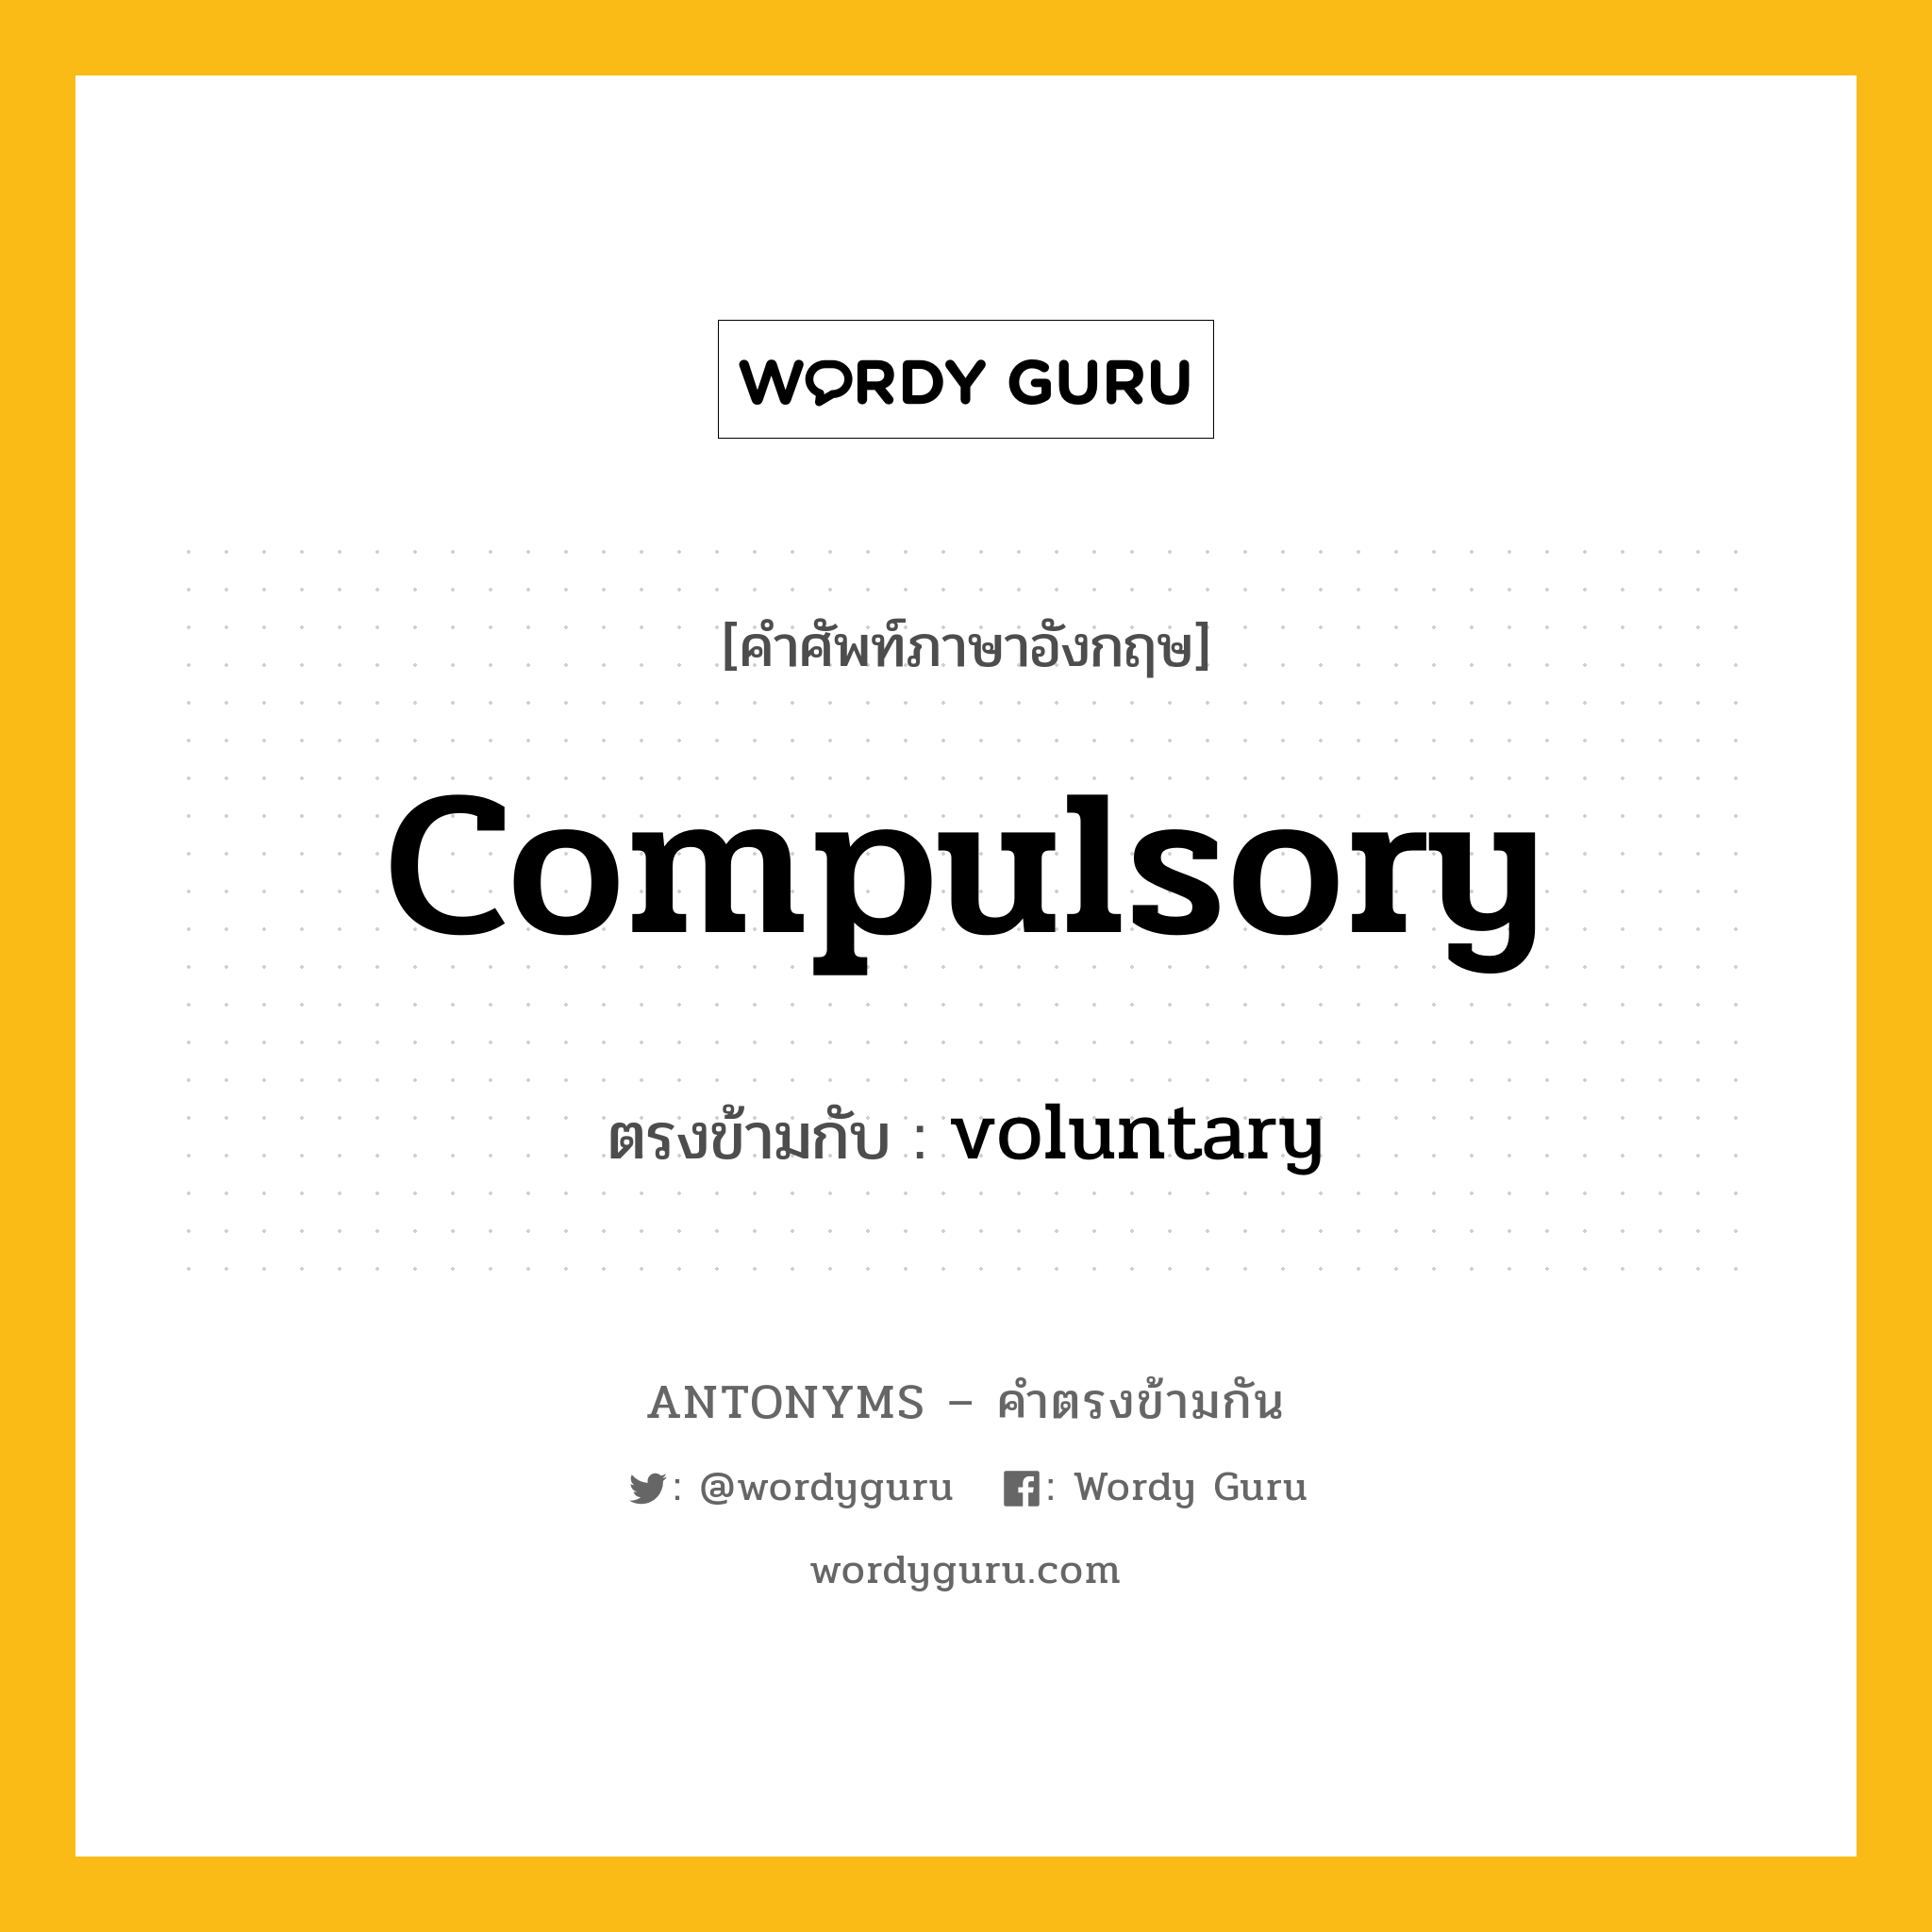 compulsory เป็นคำตรงข้ามกับคำไหนบ้าง?, คำศัพท์ภาษาอังกฤษ compulsory ตรงข้ามกับ voluntary หมวด voluntary